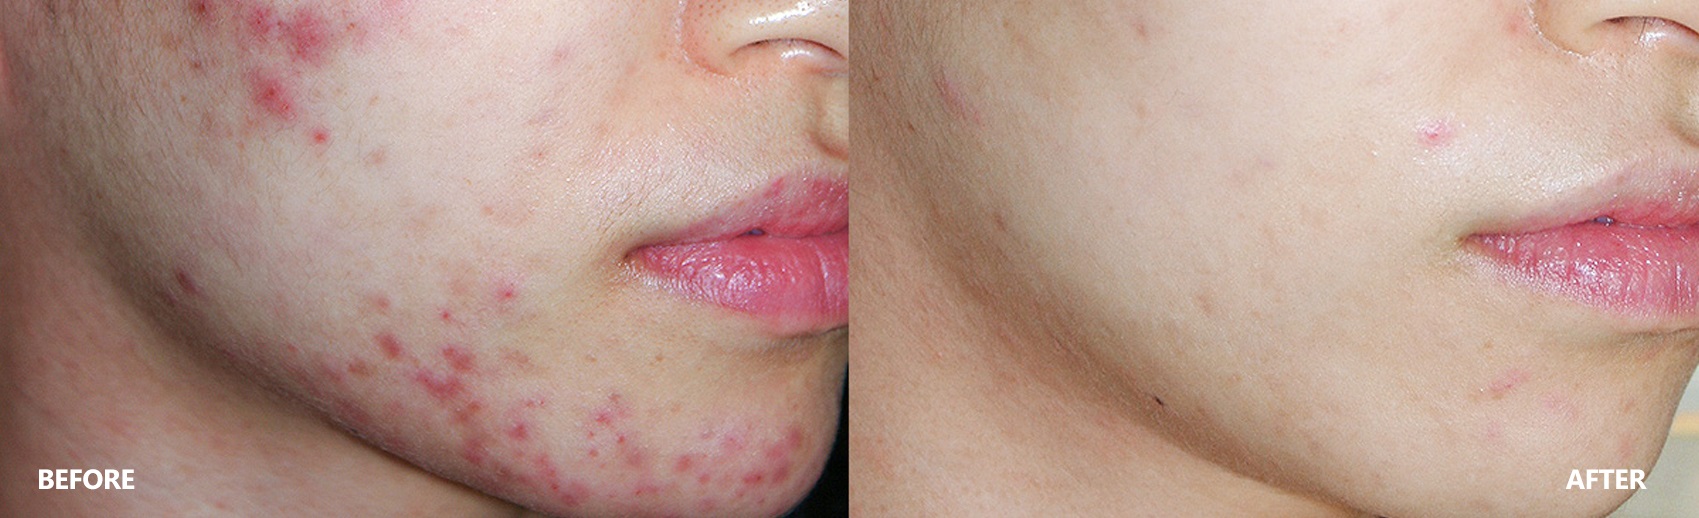 acne-result-banner.jpg